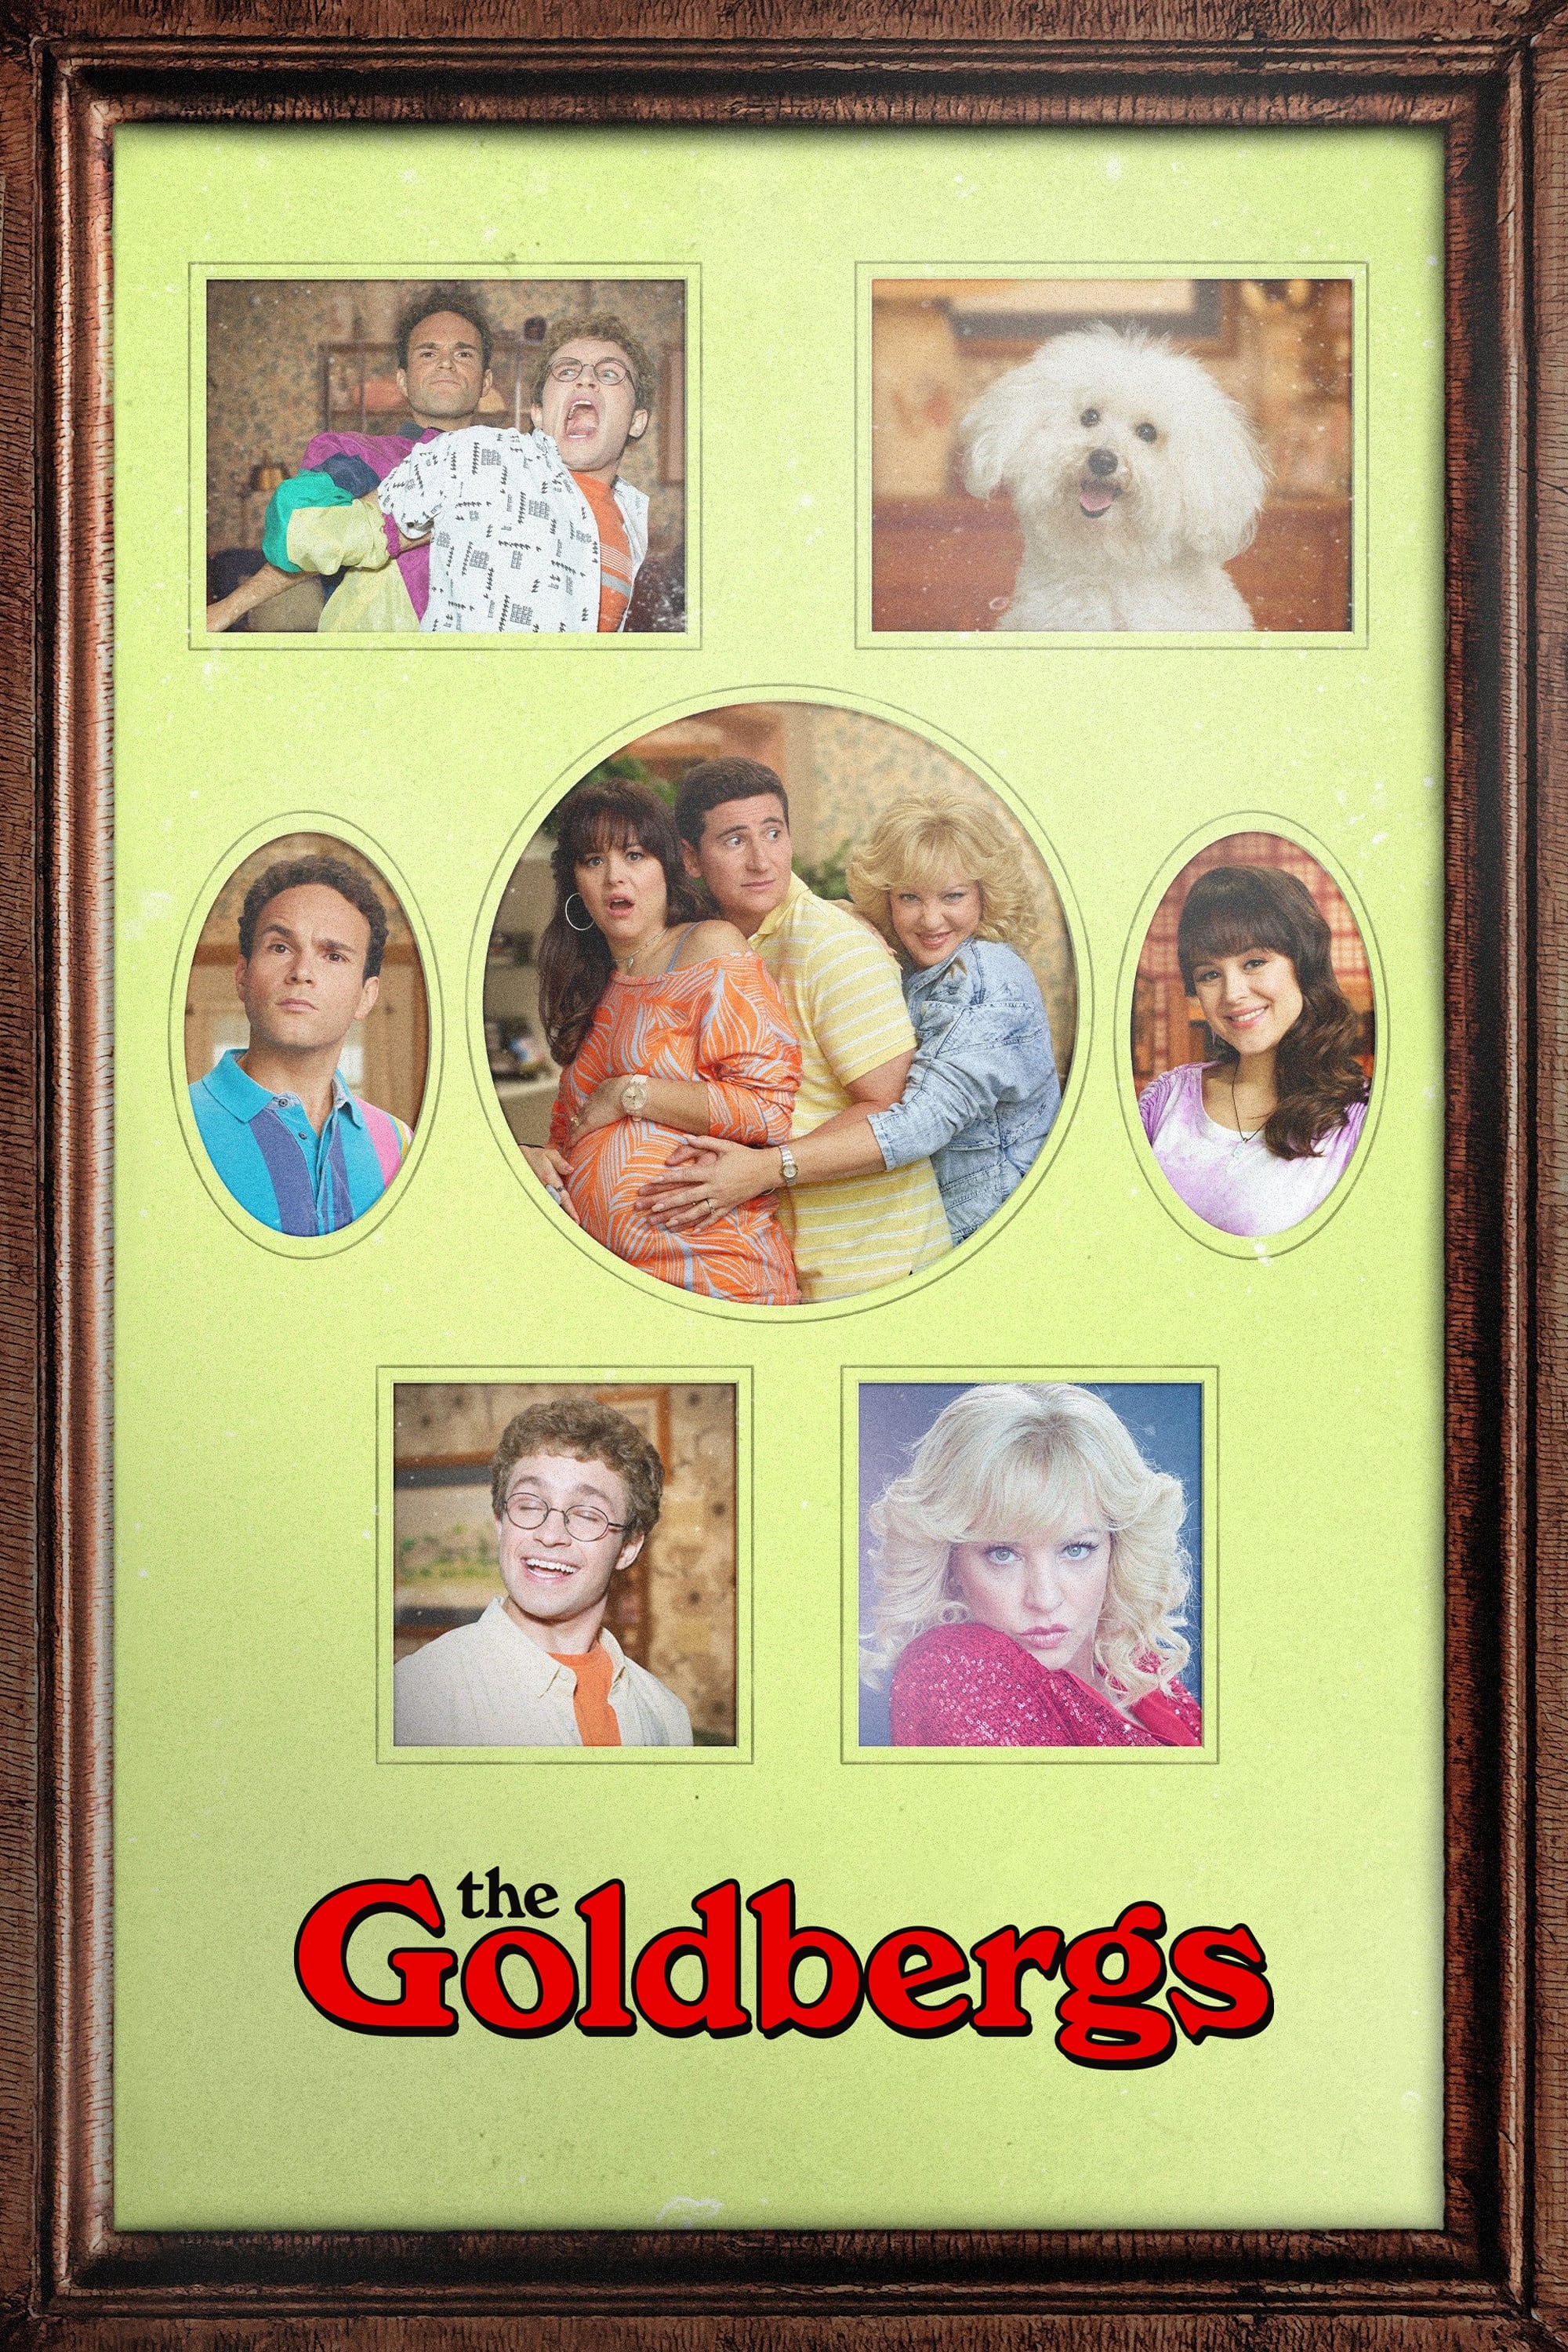 The Goldbergs (2013)